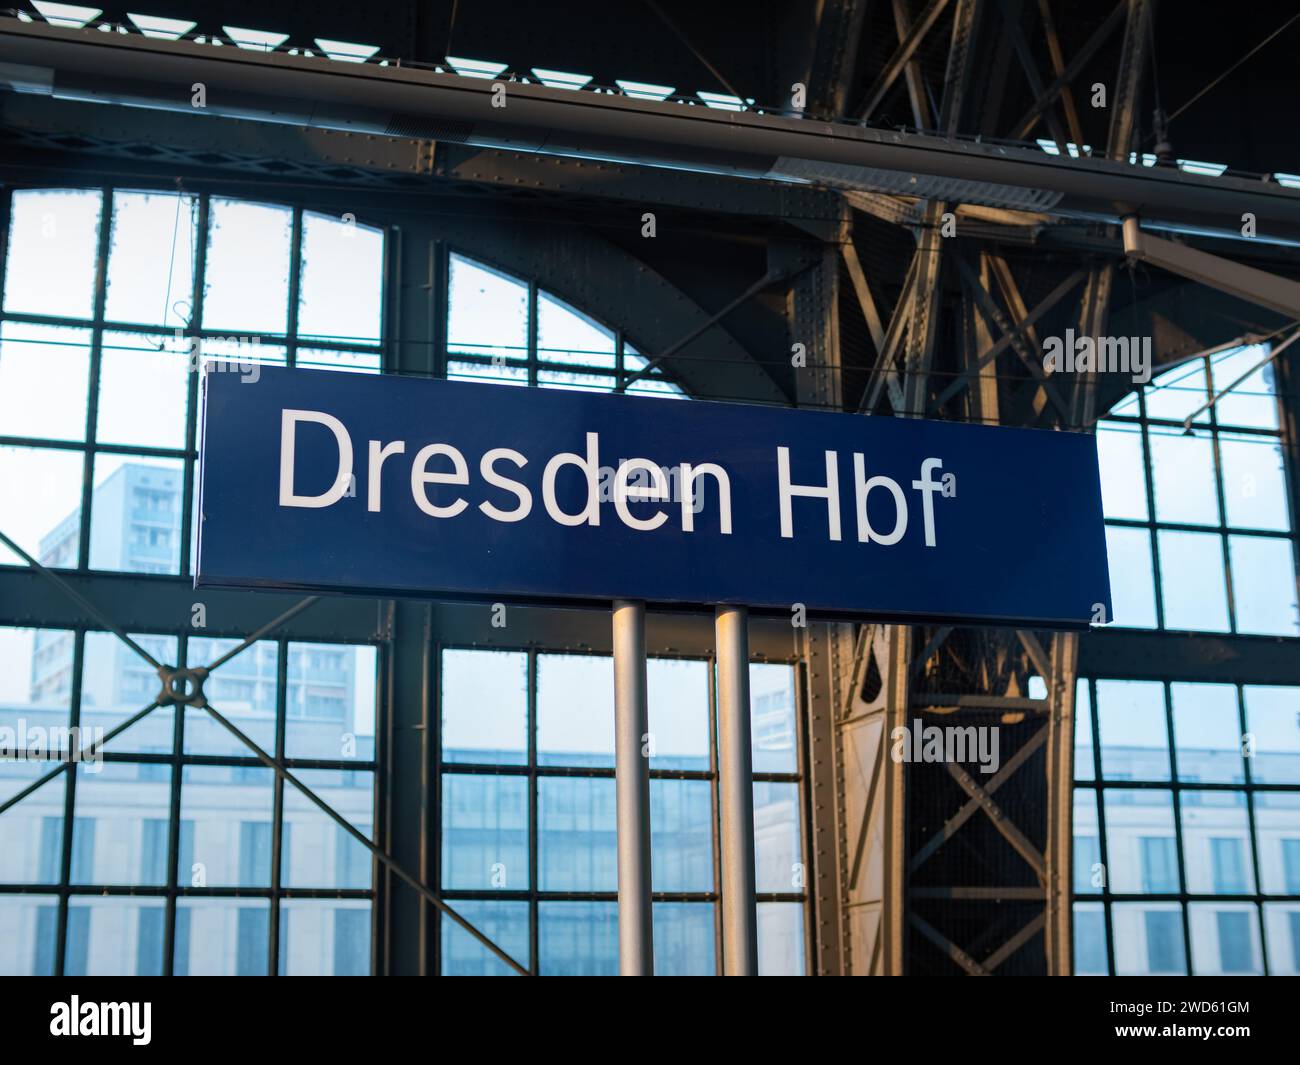 Dresden Hbf señal en la estación central. Tablero de nombre de ubicación en la plataforma del tren. Destino de viaje al utilizar los servicios de transporte público. Foto de stock